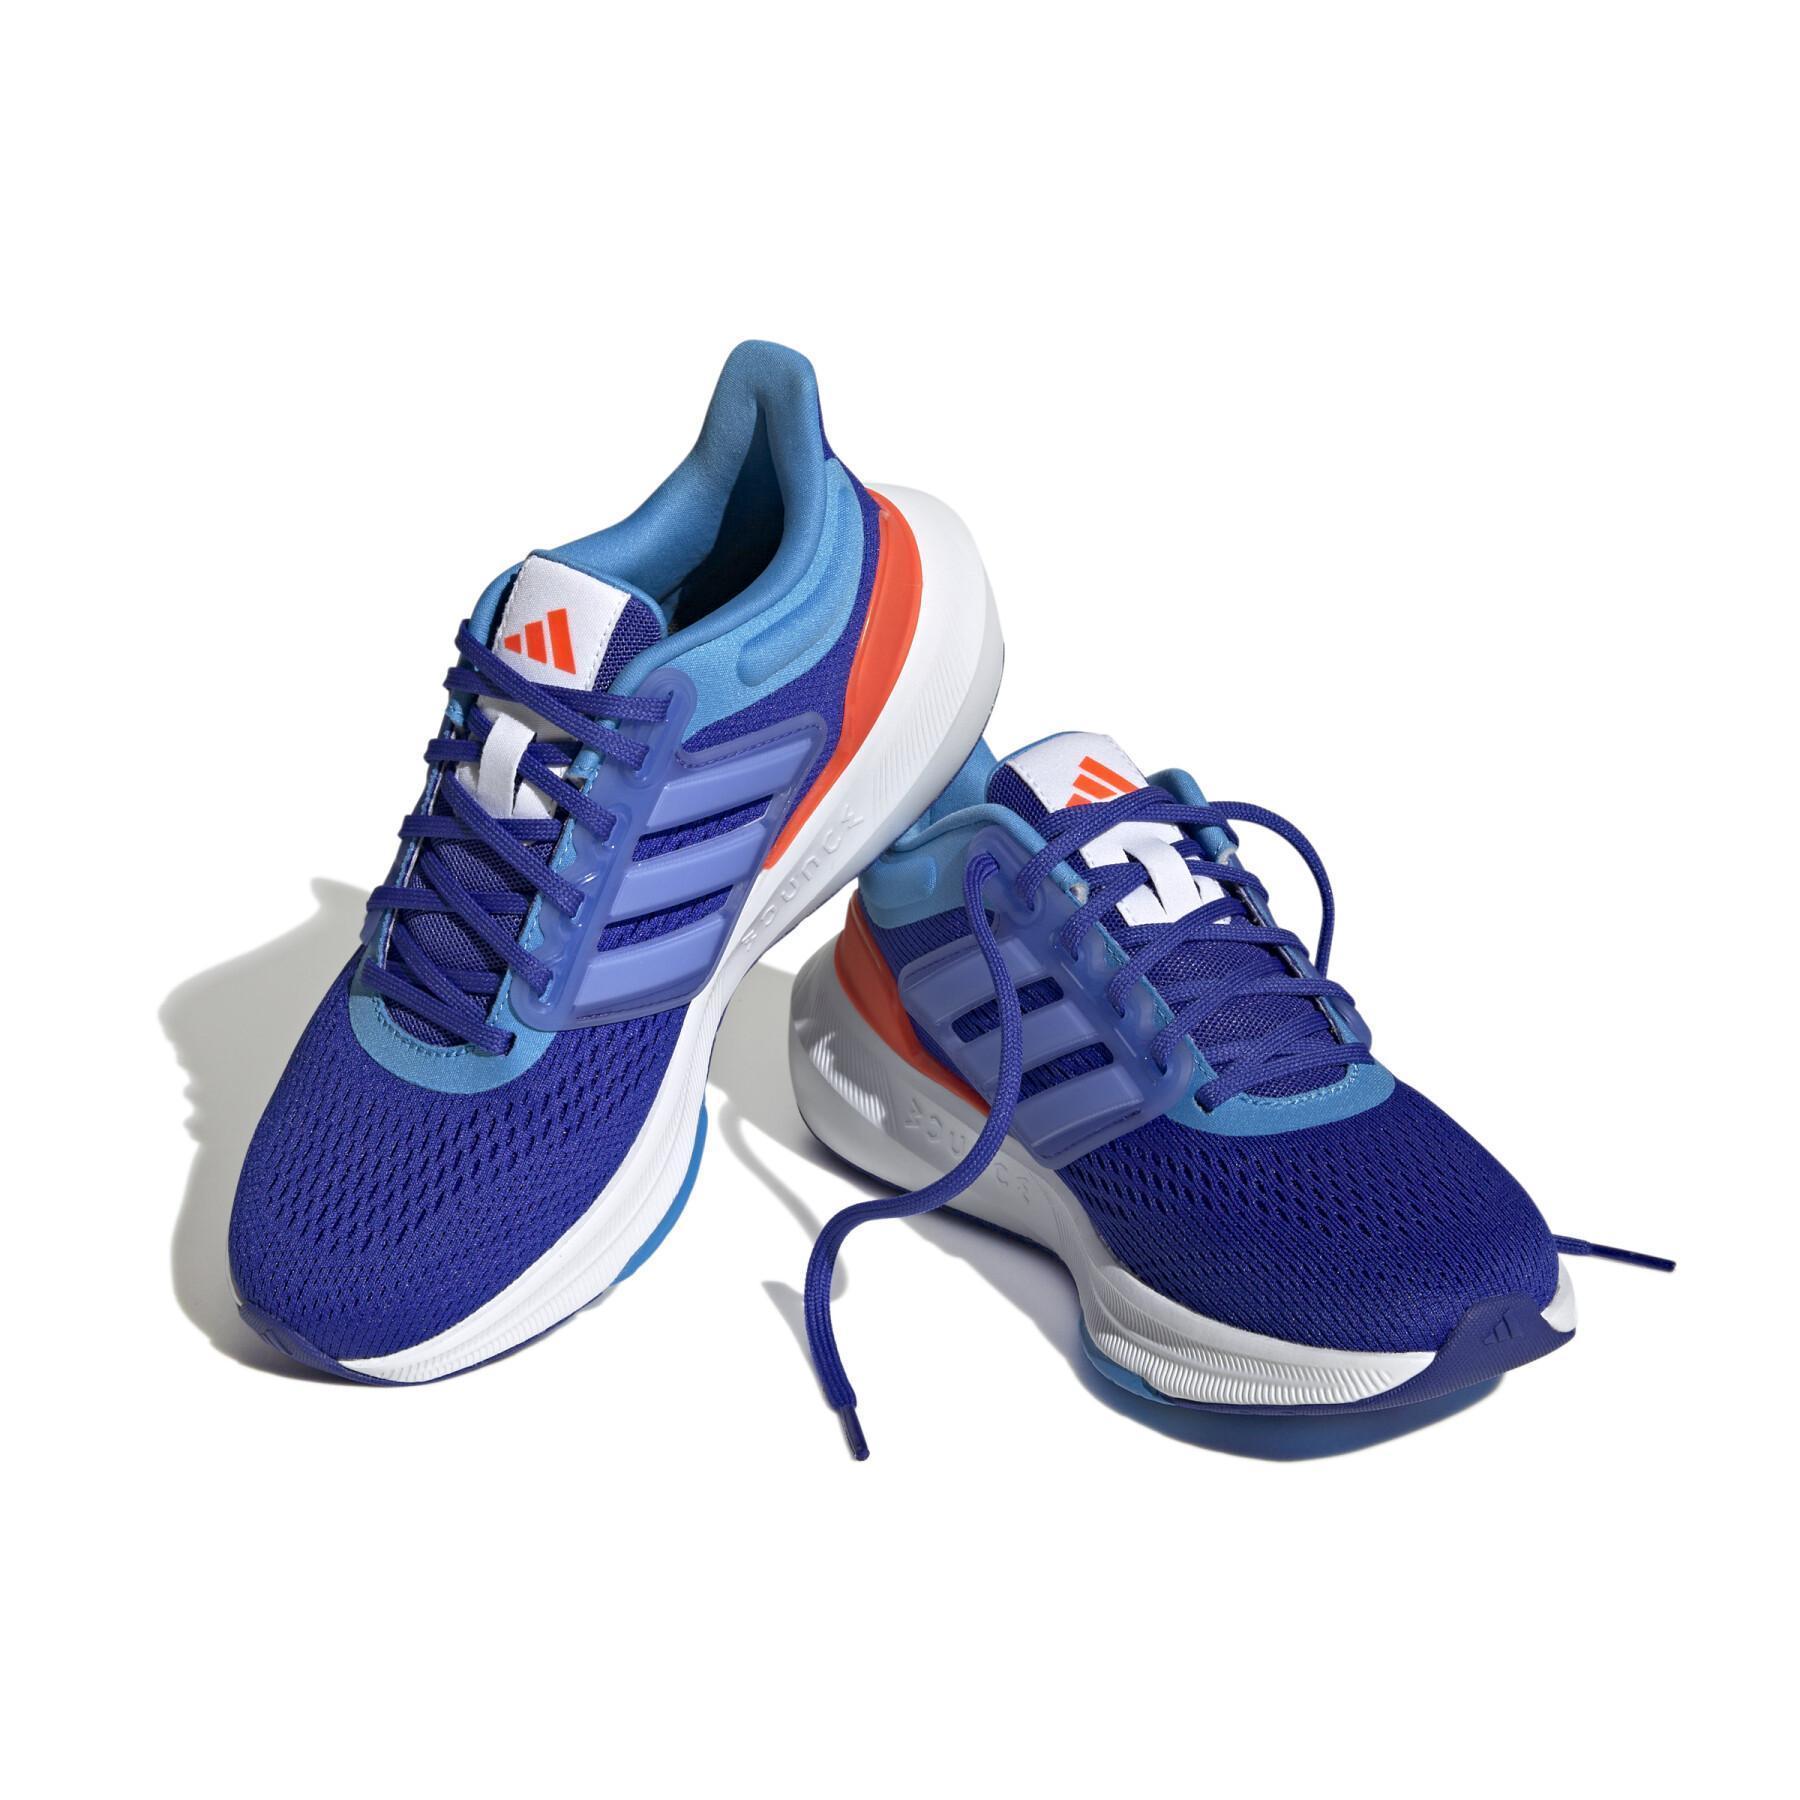 Children's running shoes adidas Ultrabounce